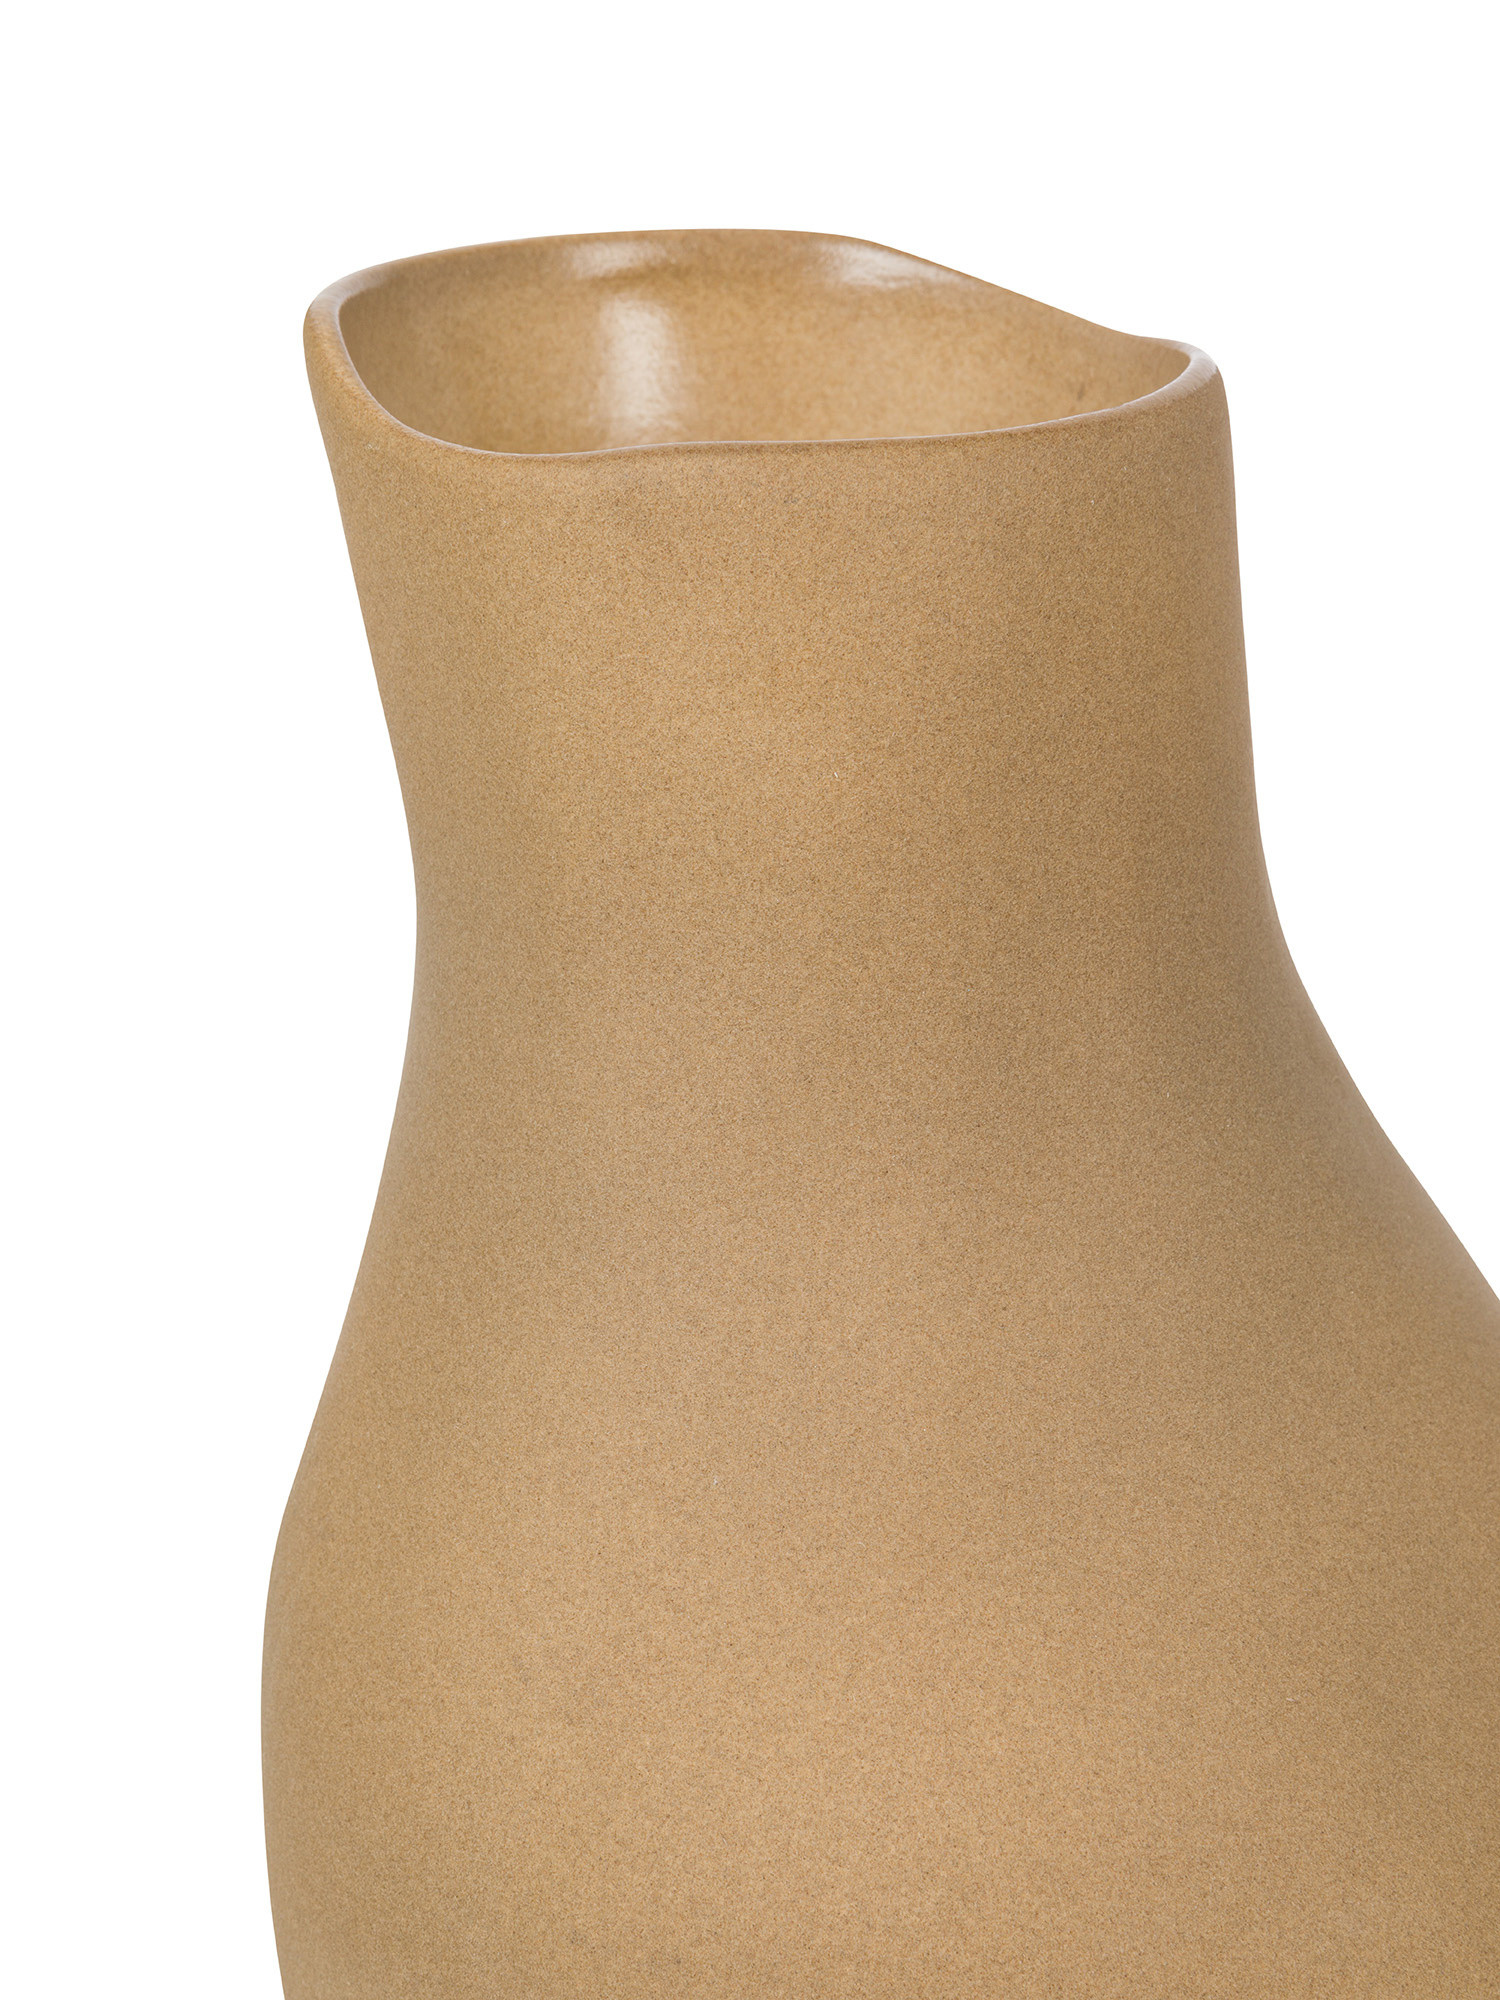 Ceramic vase, Beige, large image number 1